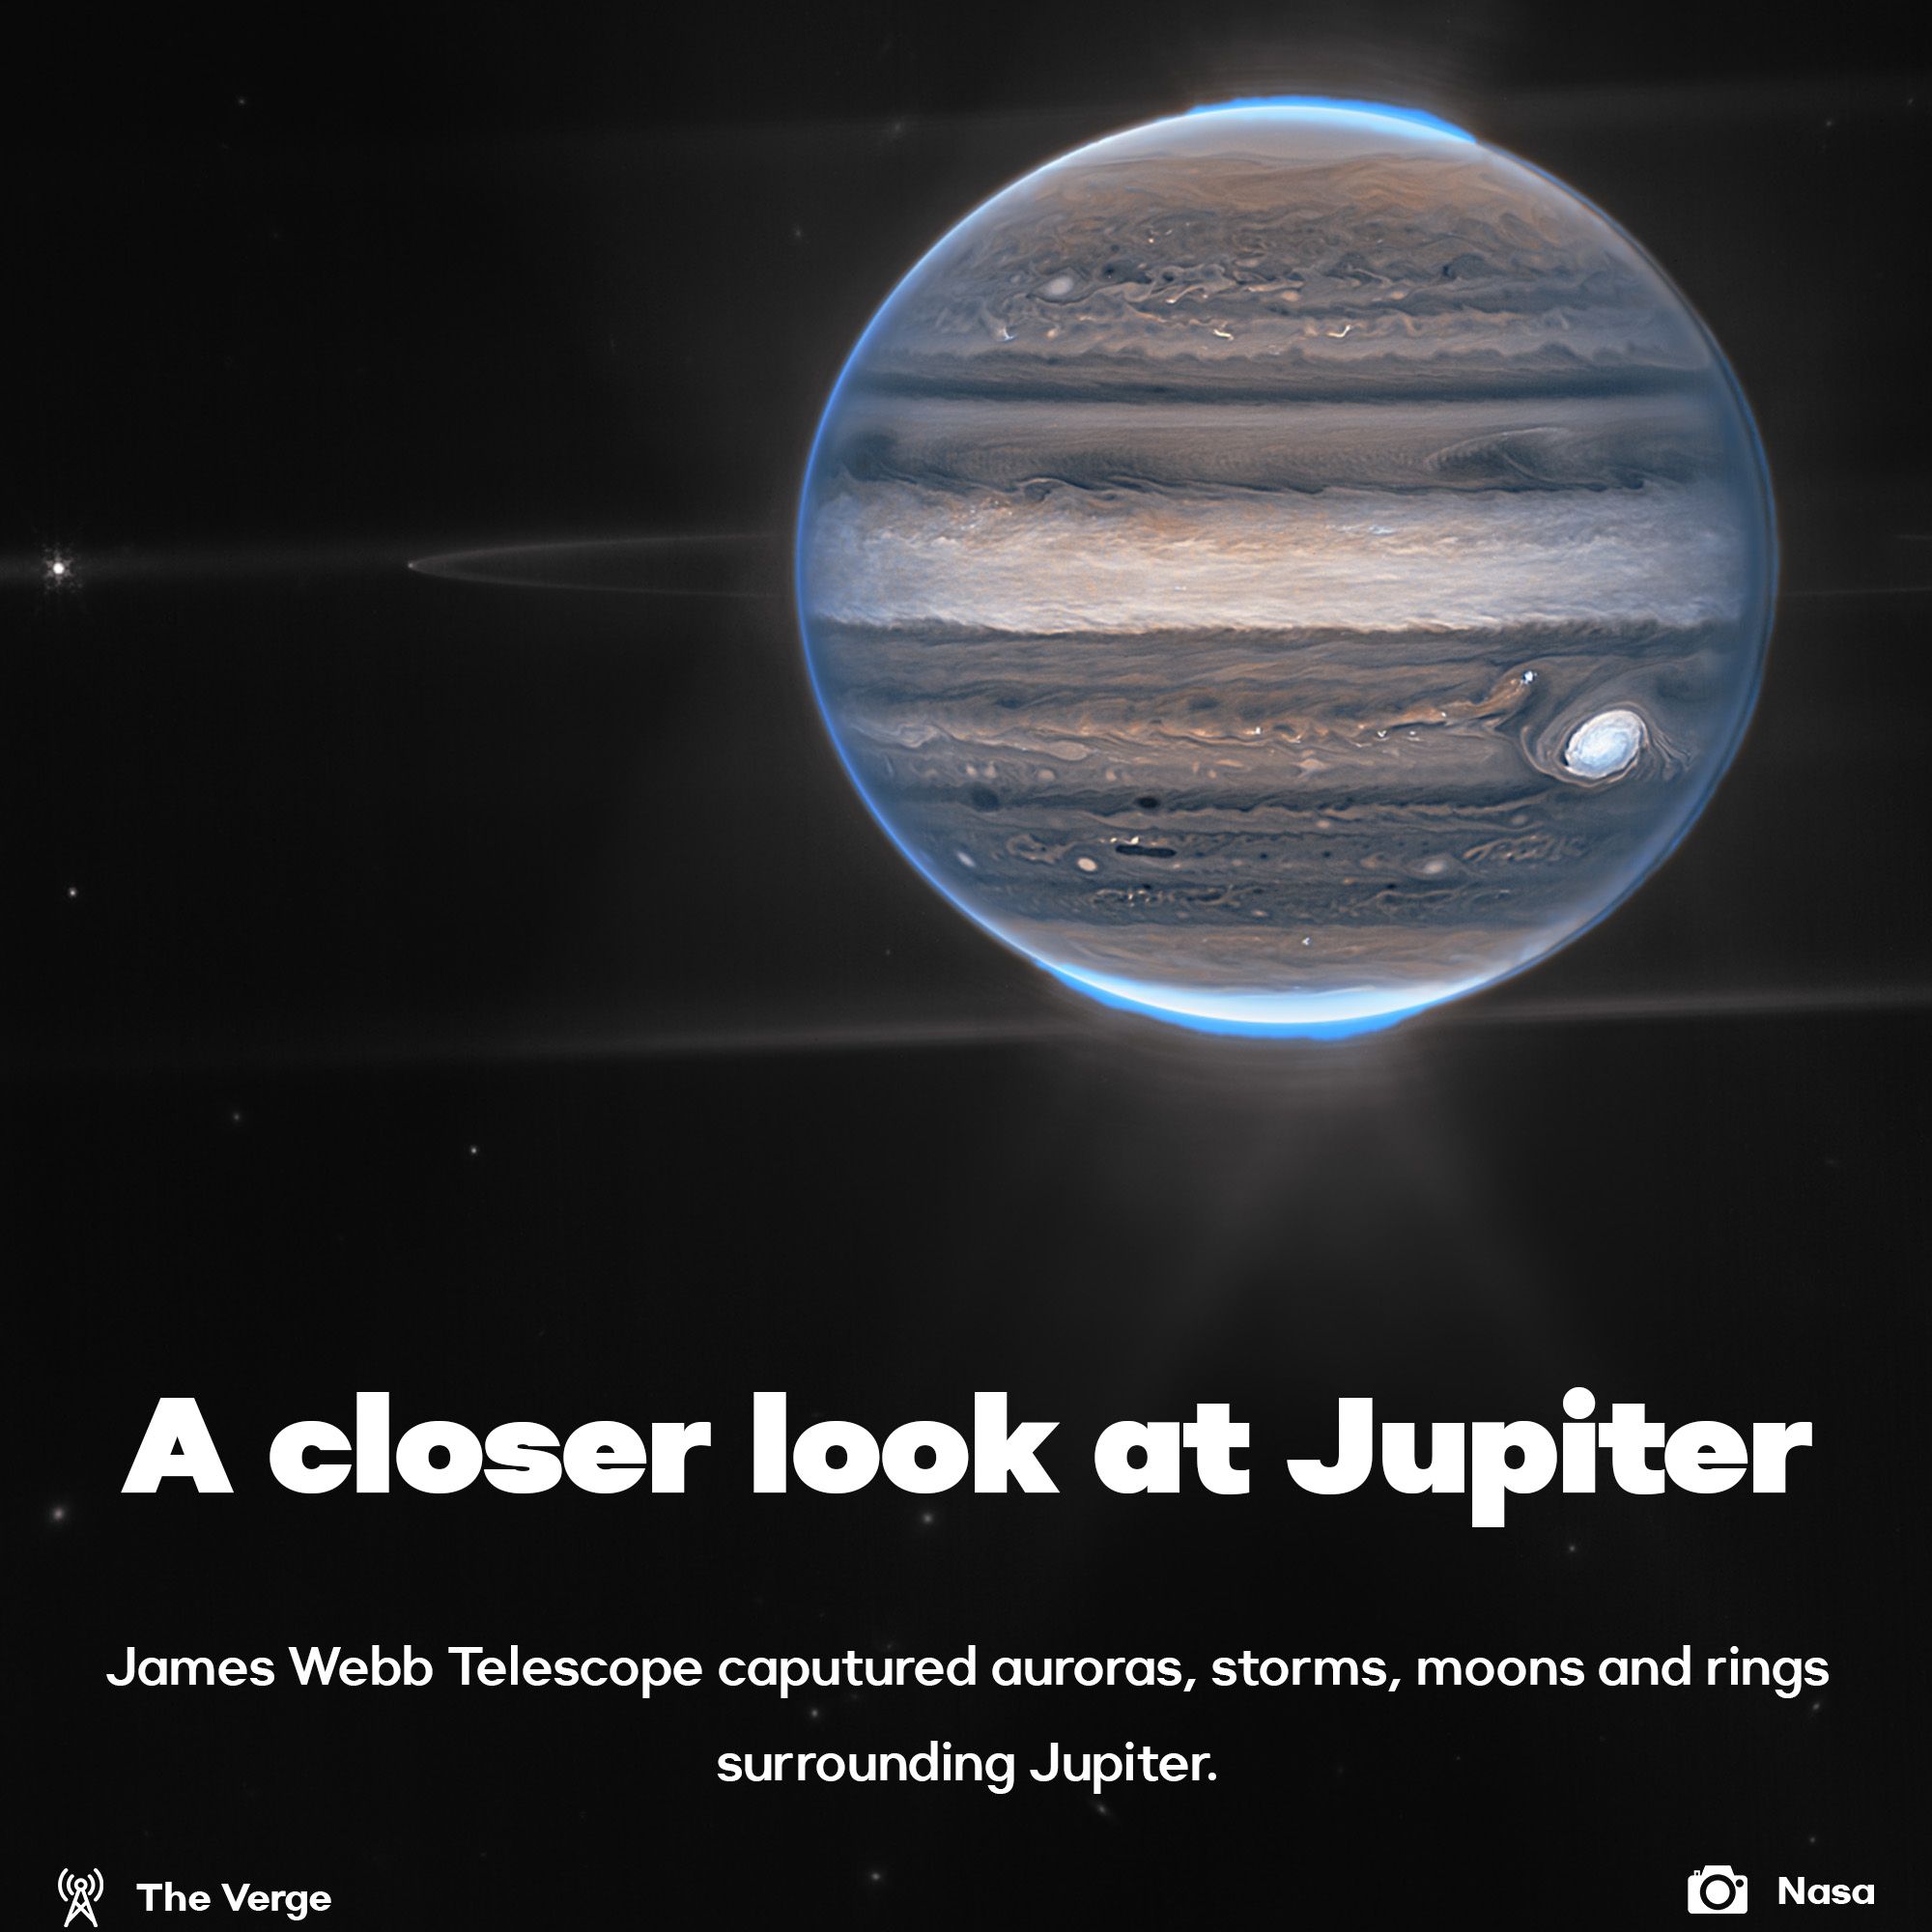 James Webb Telescope had a closer look at Jupiter